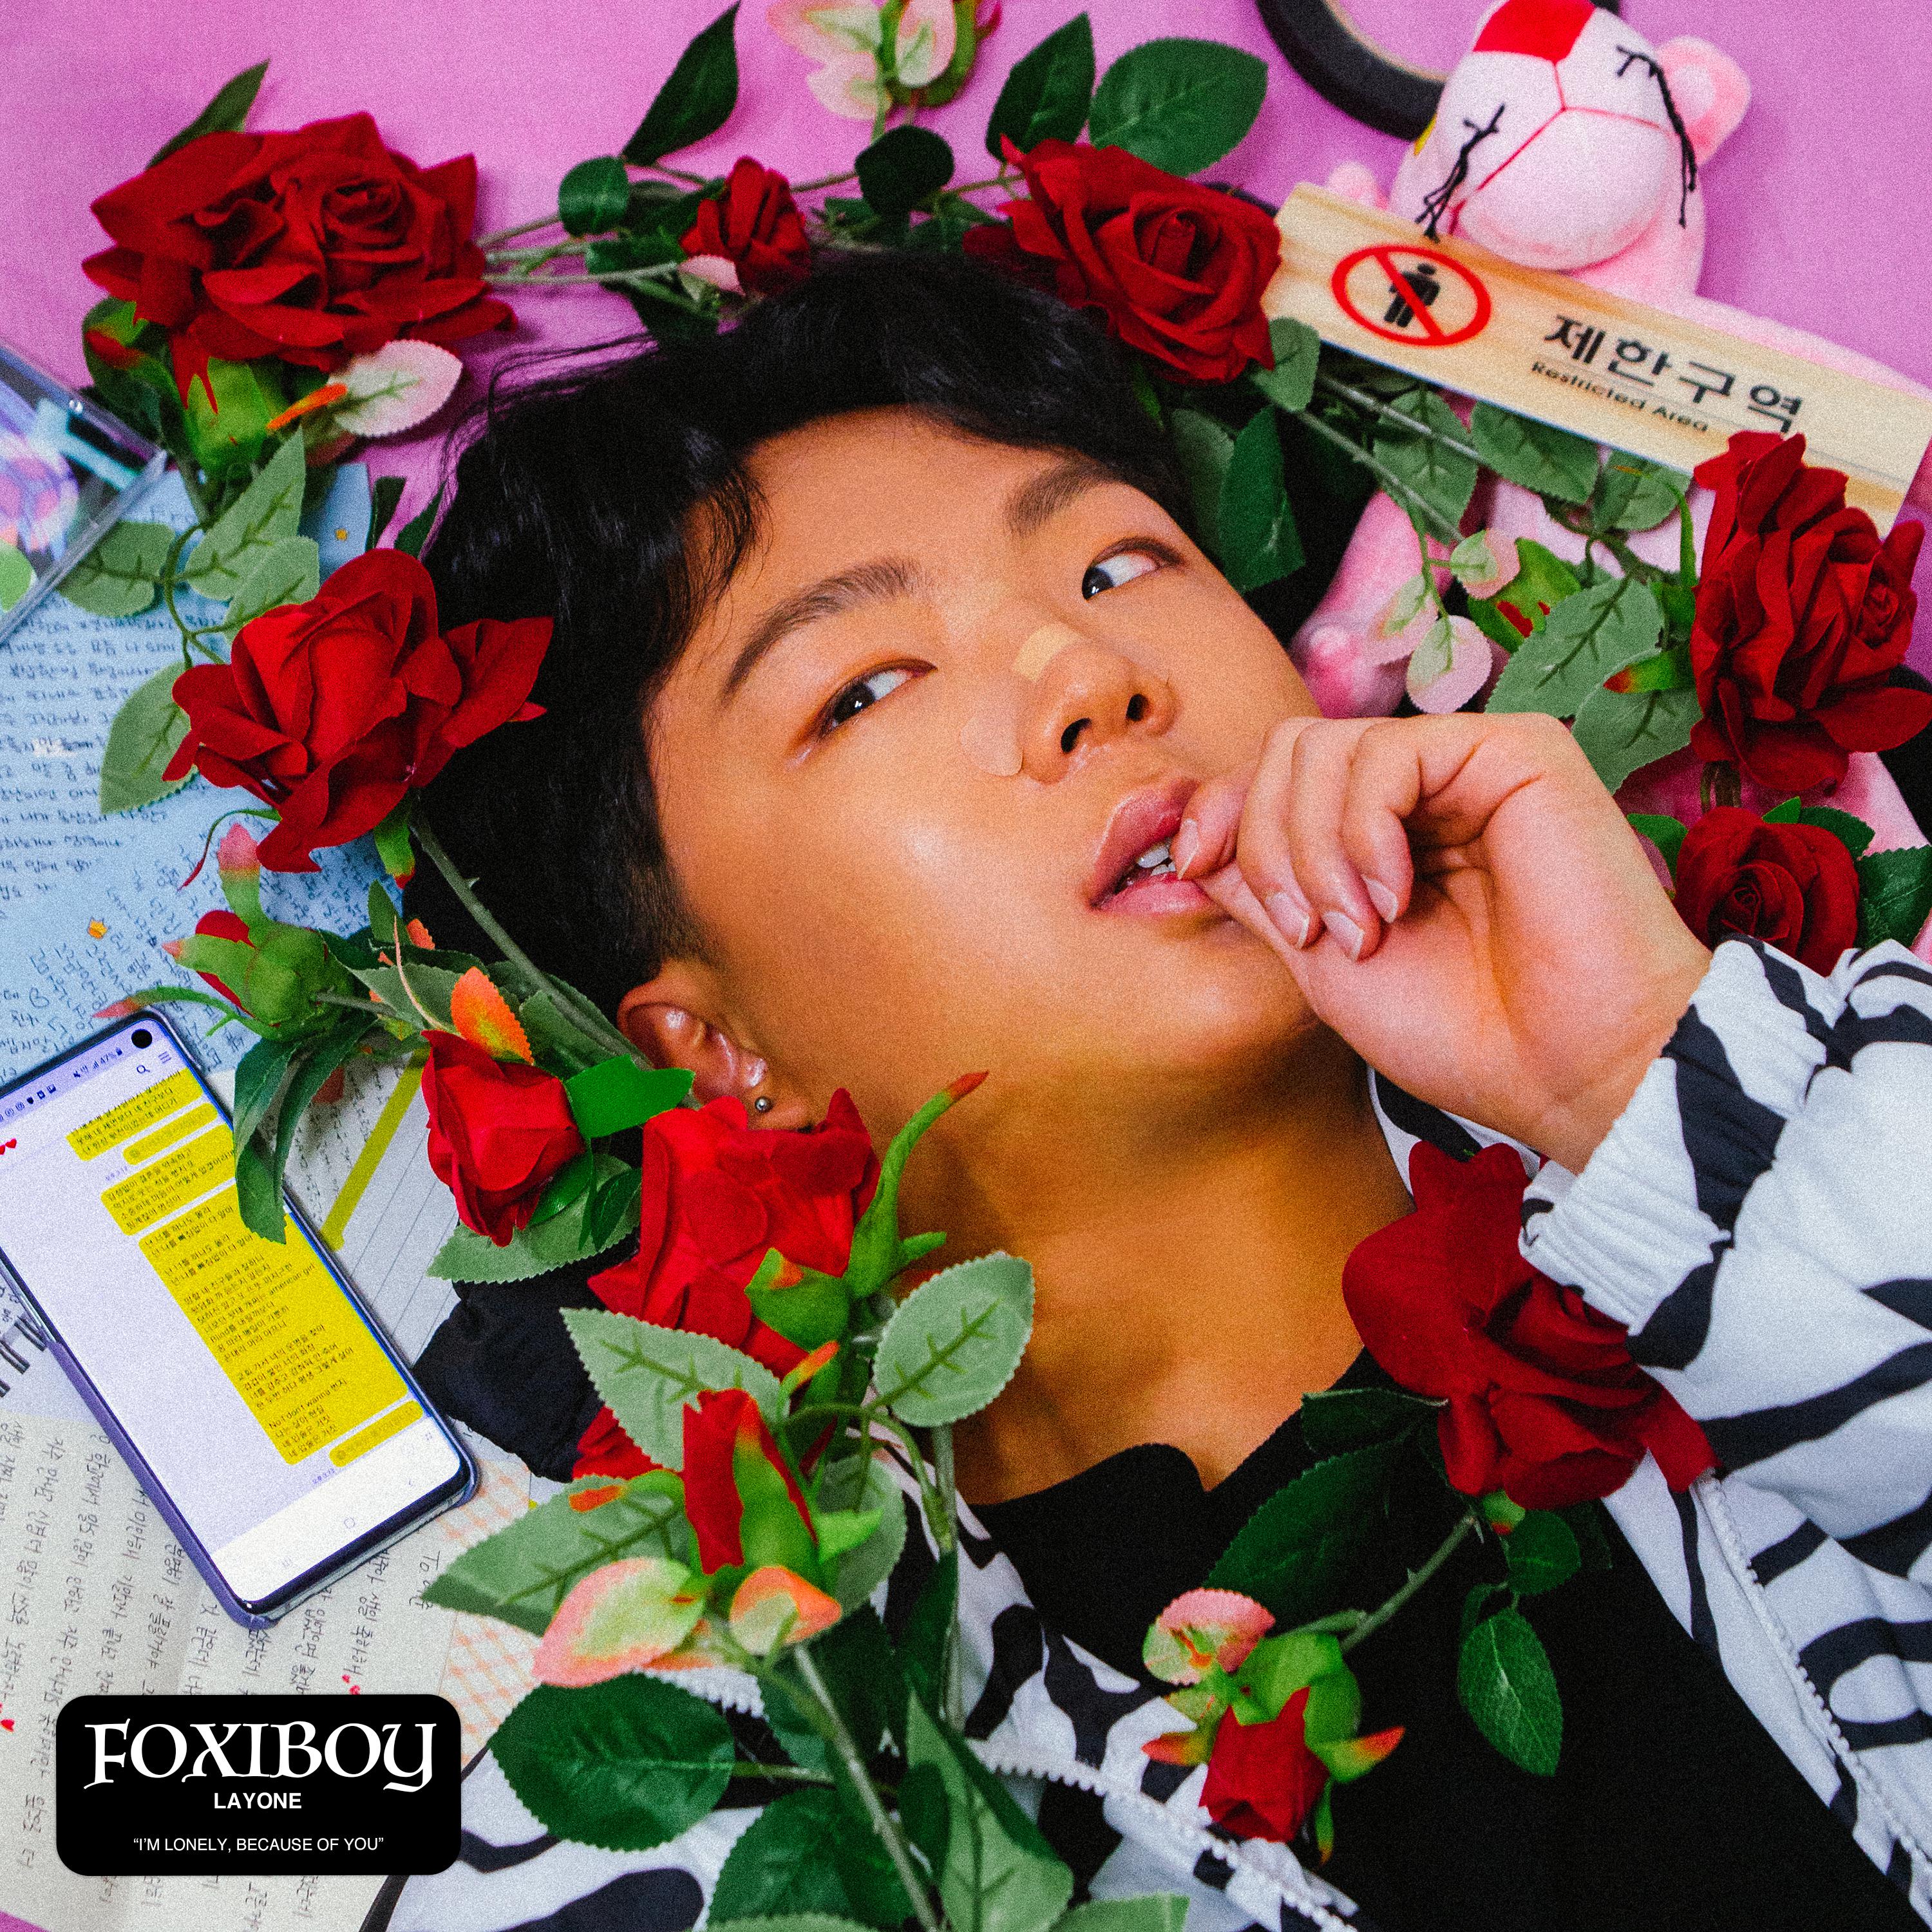 피치歌词 歌手래원 / Kisum-专辑Foxiboy-单曲《피치》LRC歌词下载